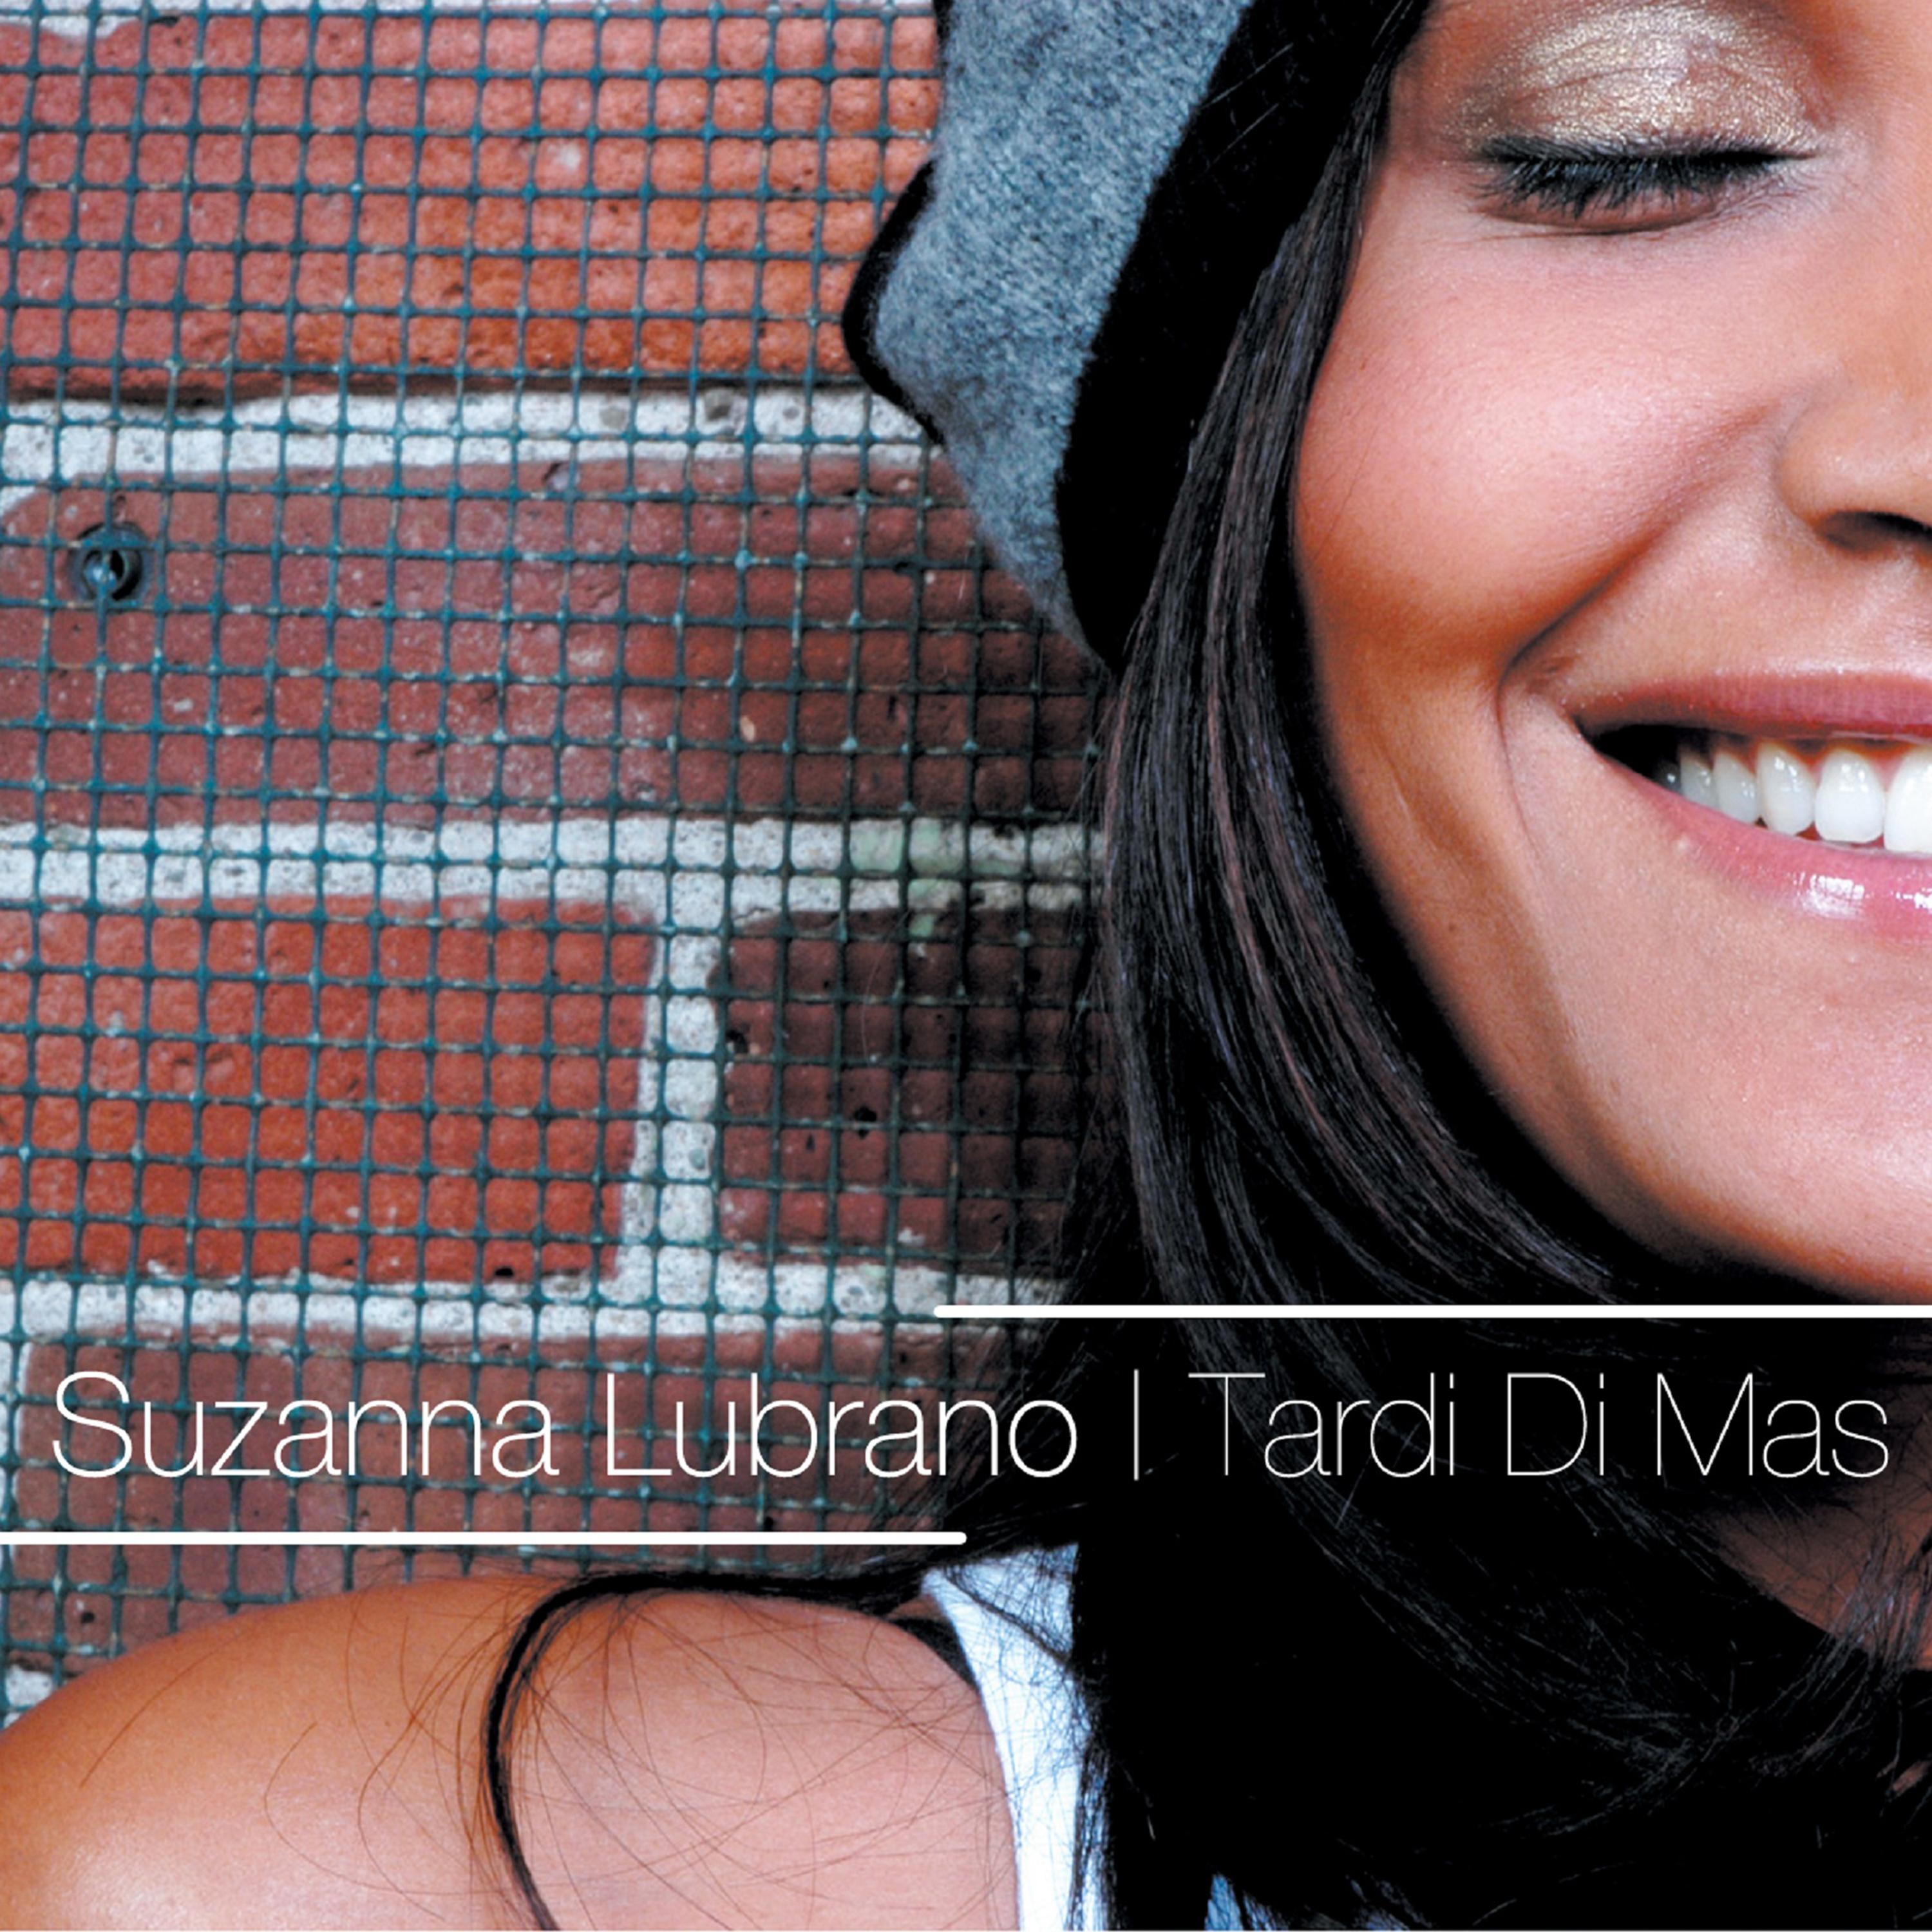 Tardi Di Mas (Radio Edit)